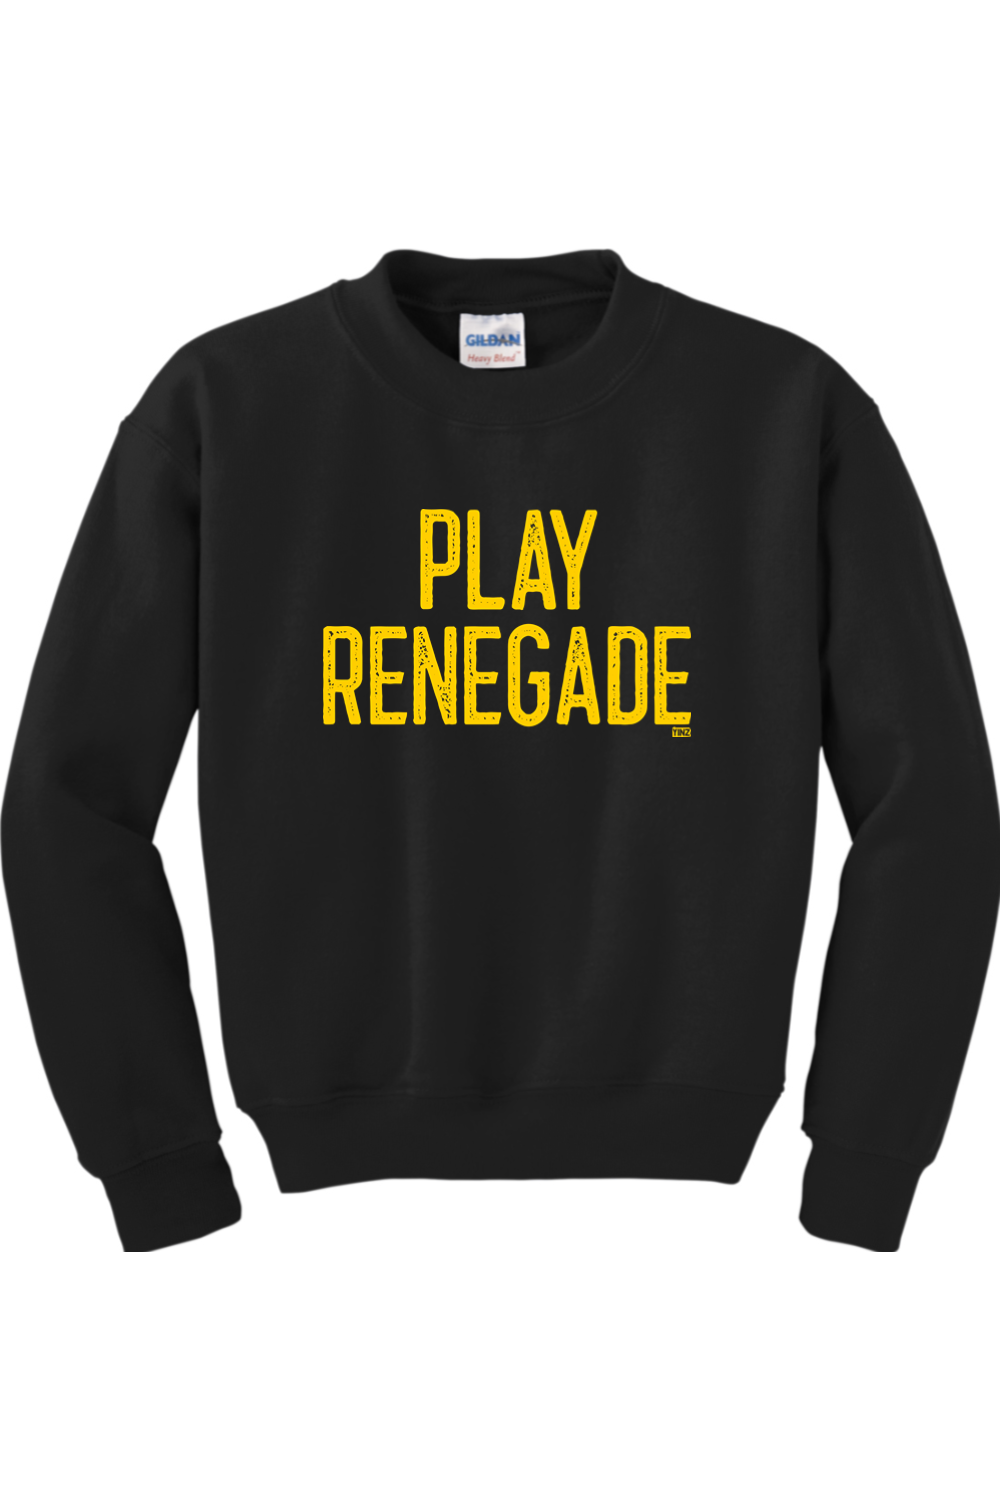 Play Renegade - Youth Crewneck Sweatshirt - Yinzylvania